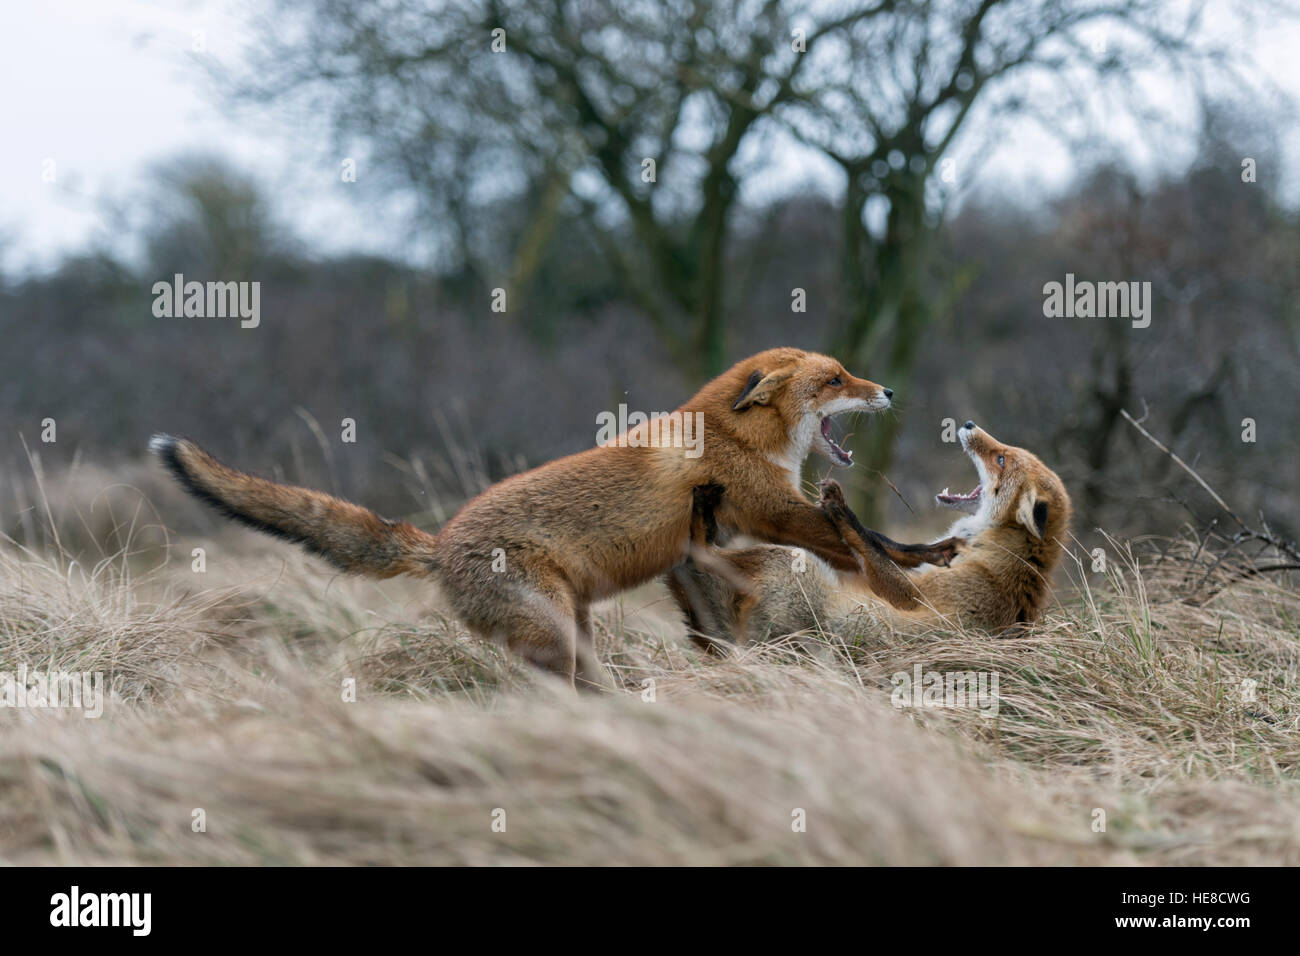 Rotfuchs / Rotfuchs (Vulpes Vulpes) im Kampf, während ihre Brunftzeit kämpfen würzen, Territorialverhalten, Tierwelt Europas. Stockfoto